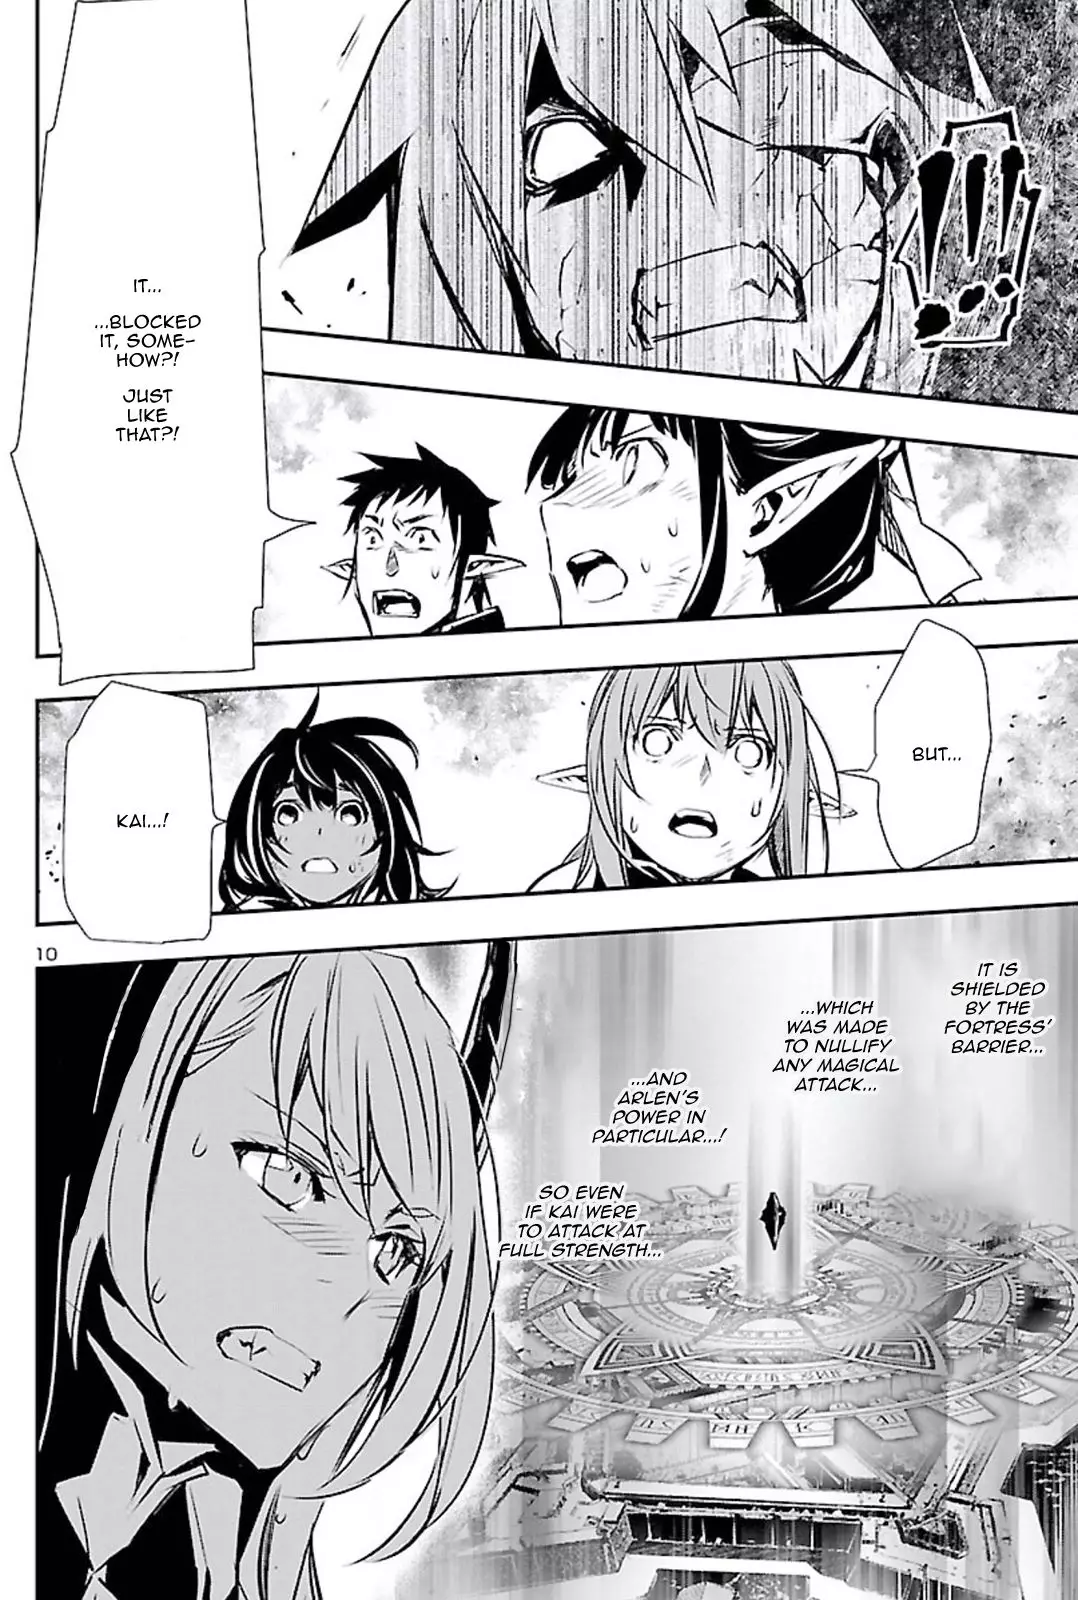 Shinju no Nectar - 47 page 10